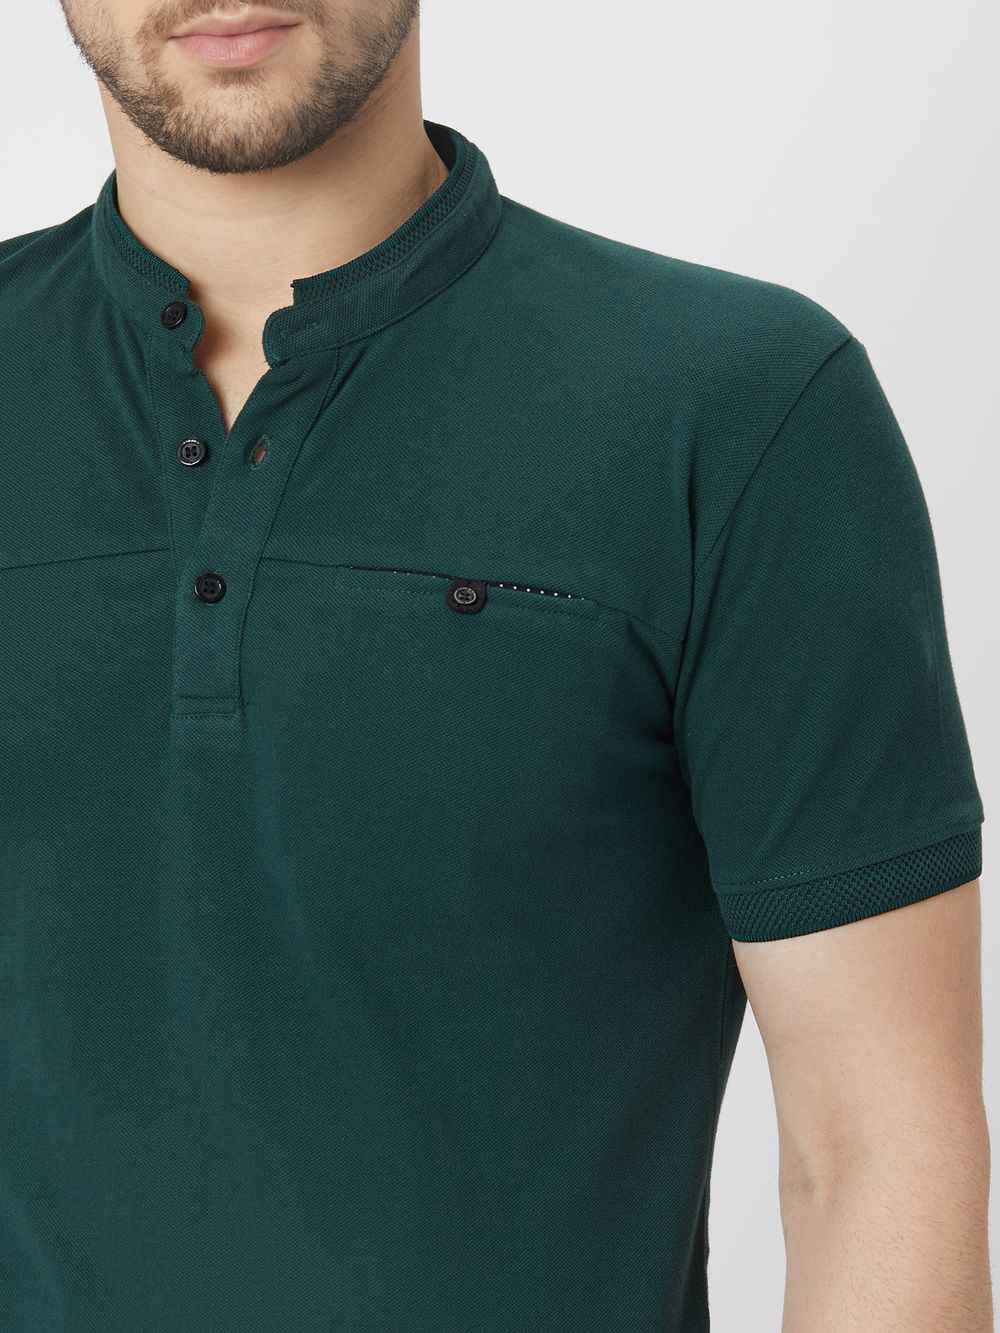 Green & Black Cut & Sew Pique Henley T-Shirt